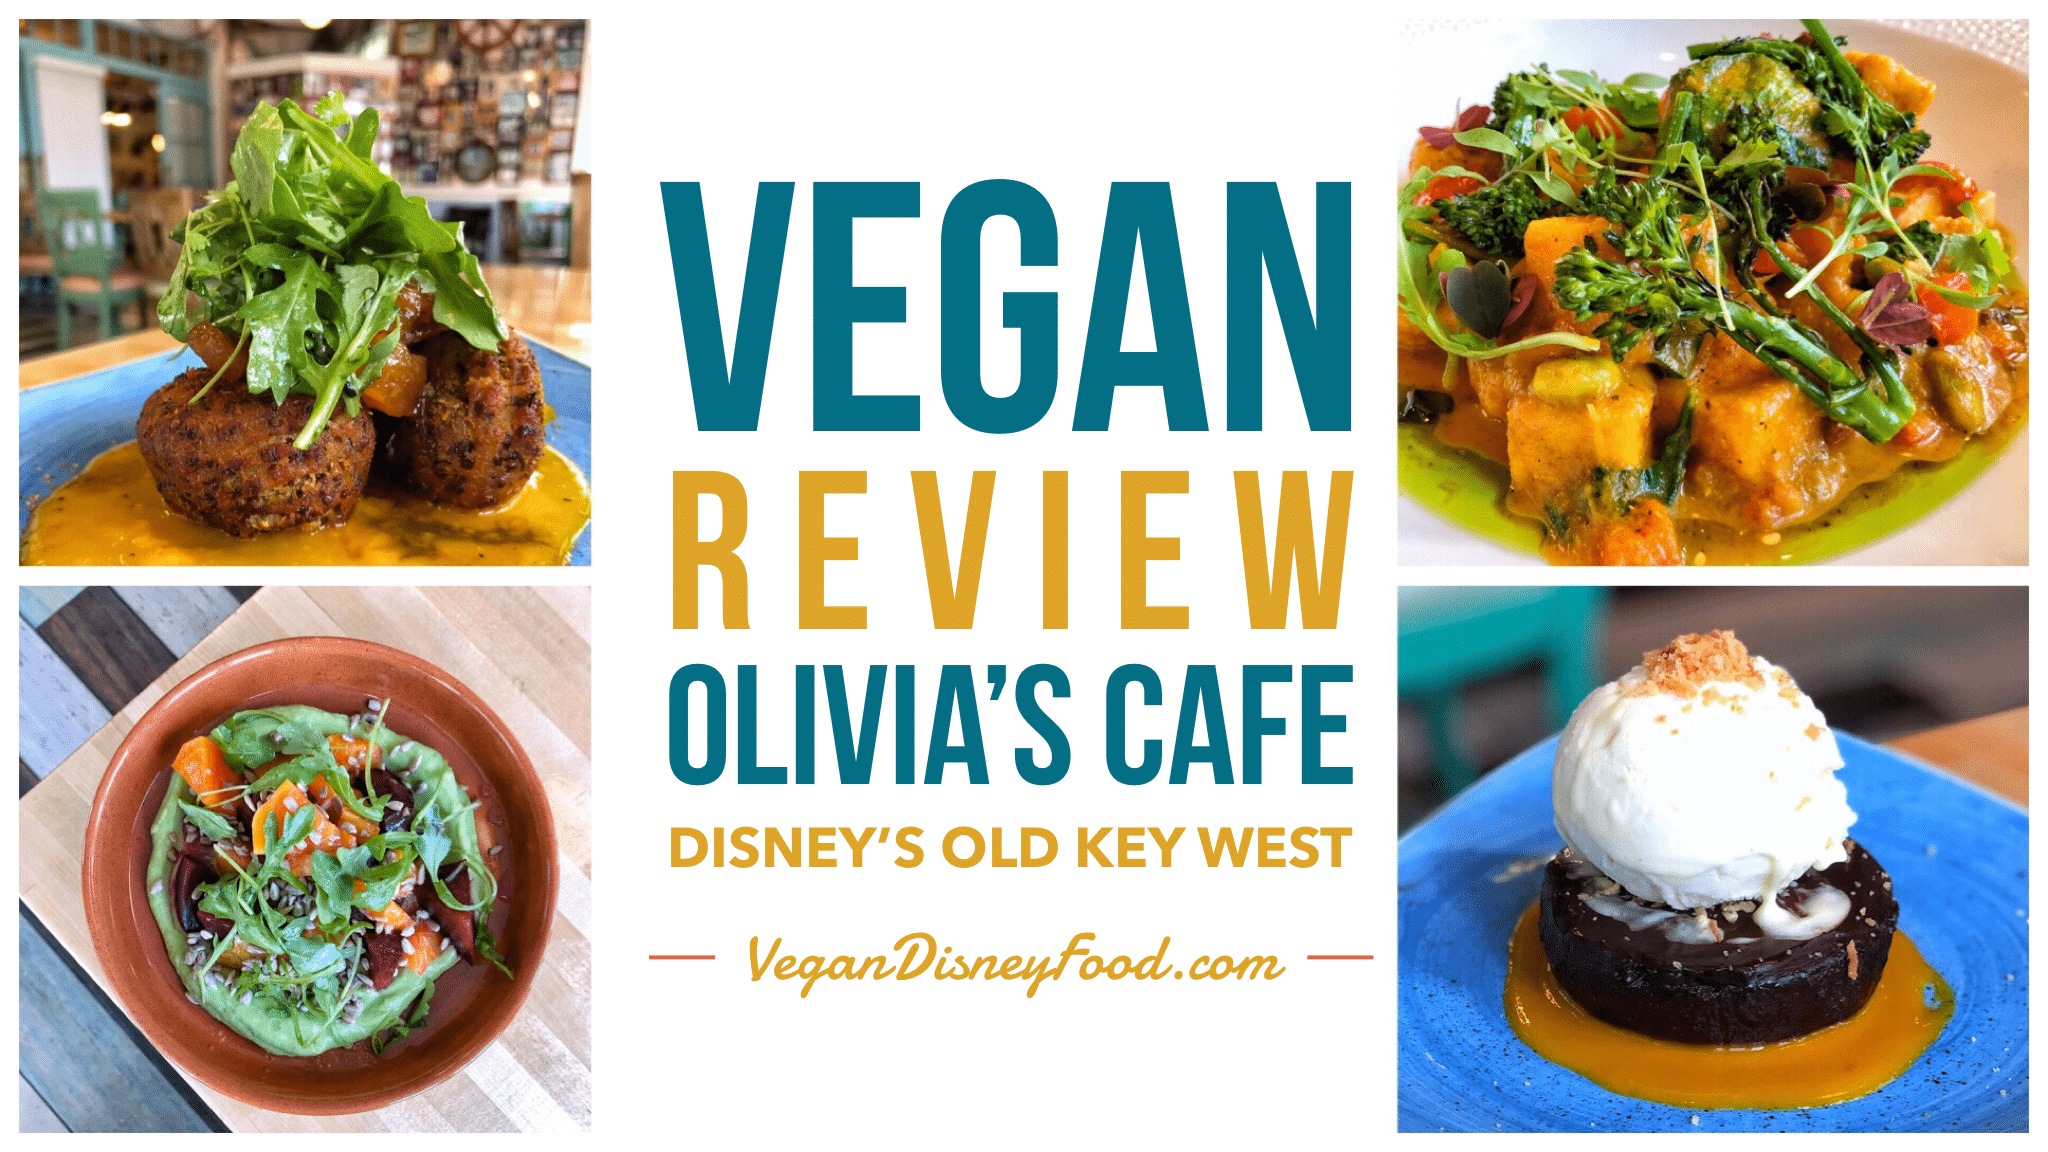 Olivia’s Cafe Vegan Review at Disney’s Old Key West Resort in Walt Disney World